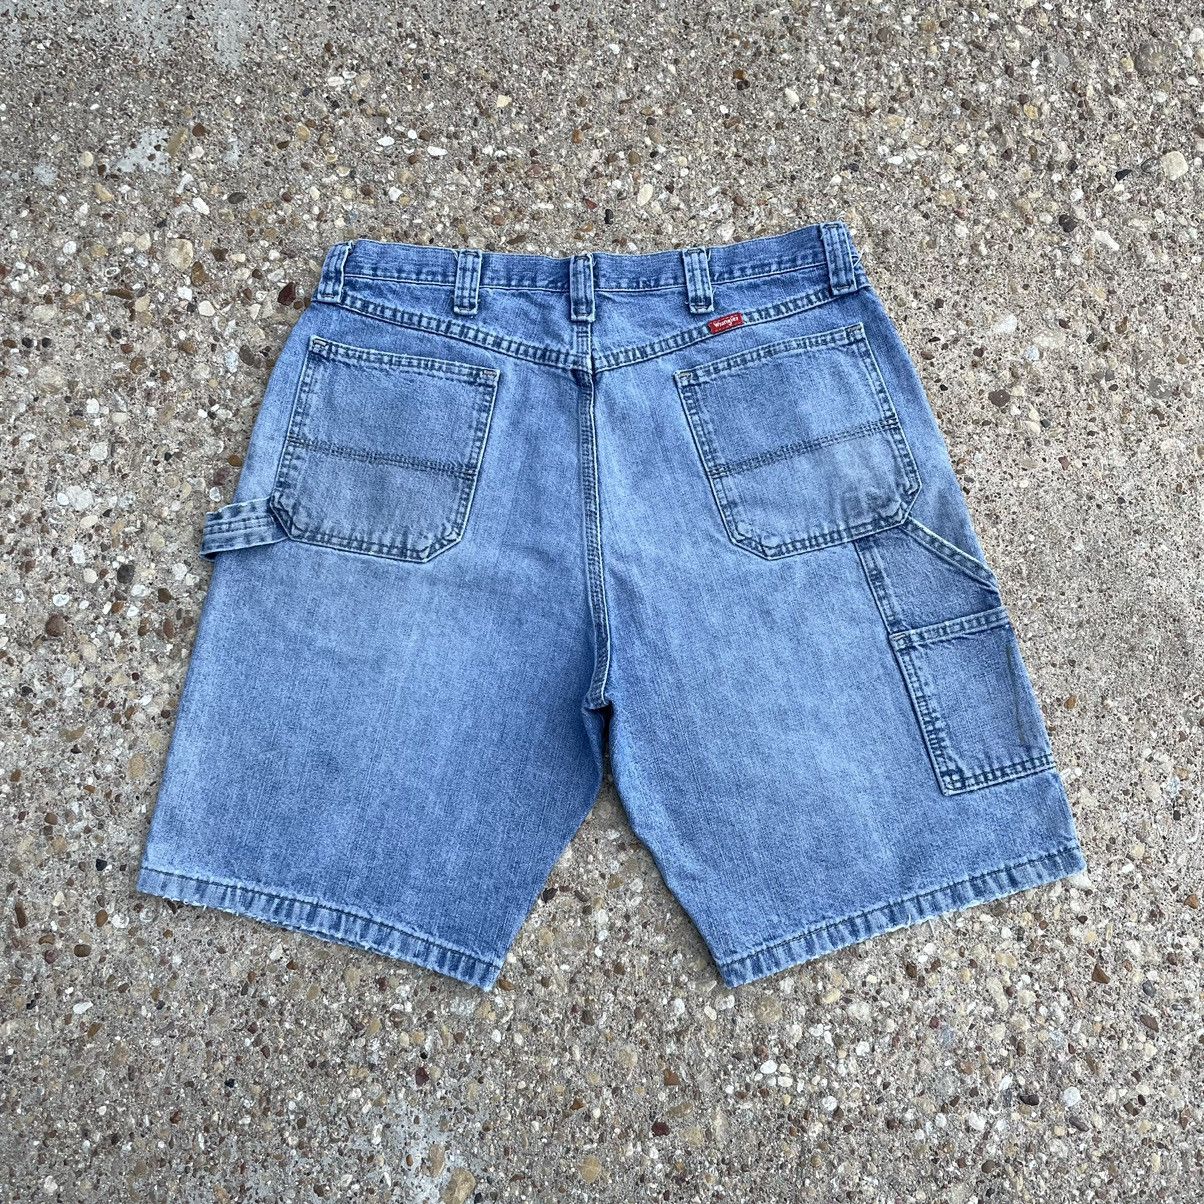 Vintage Crazy vintage baggy Jnco style Y2K denim cargo jean shorts ...